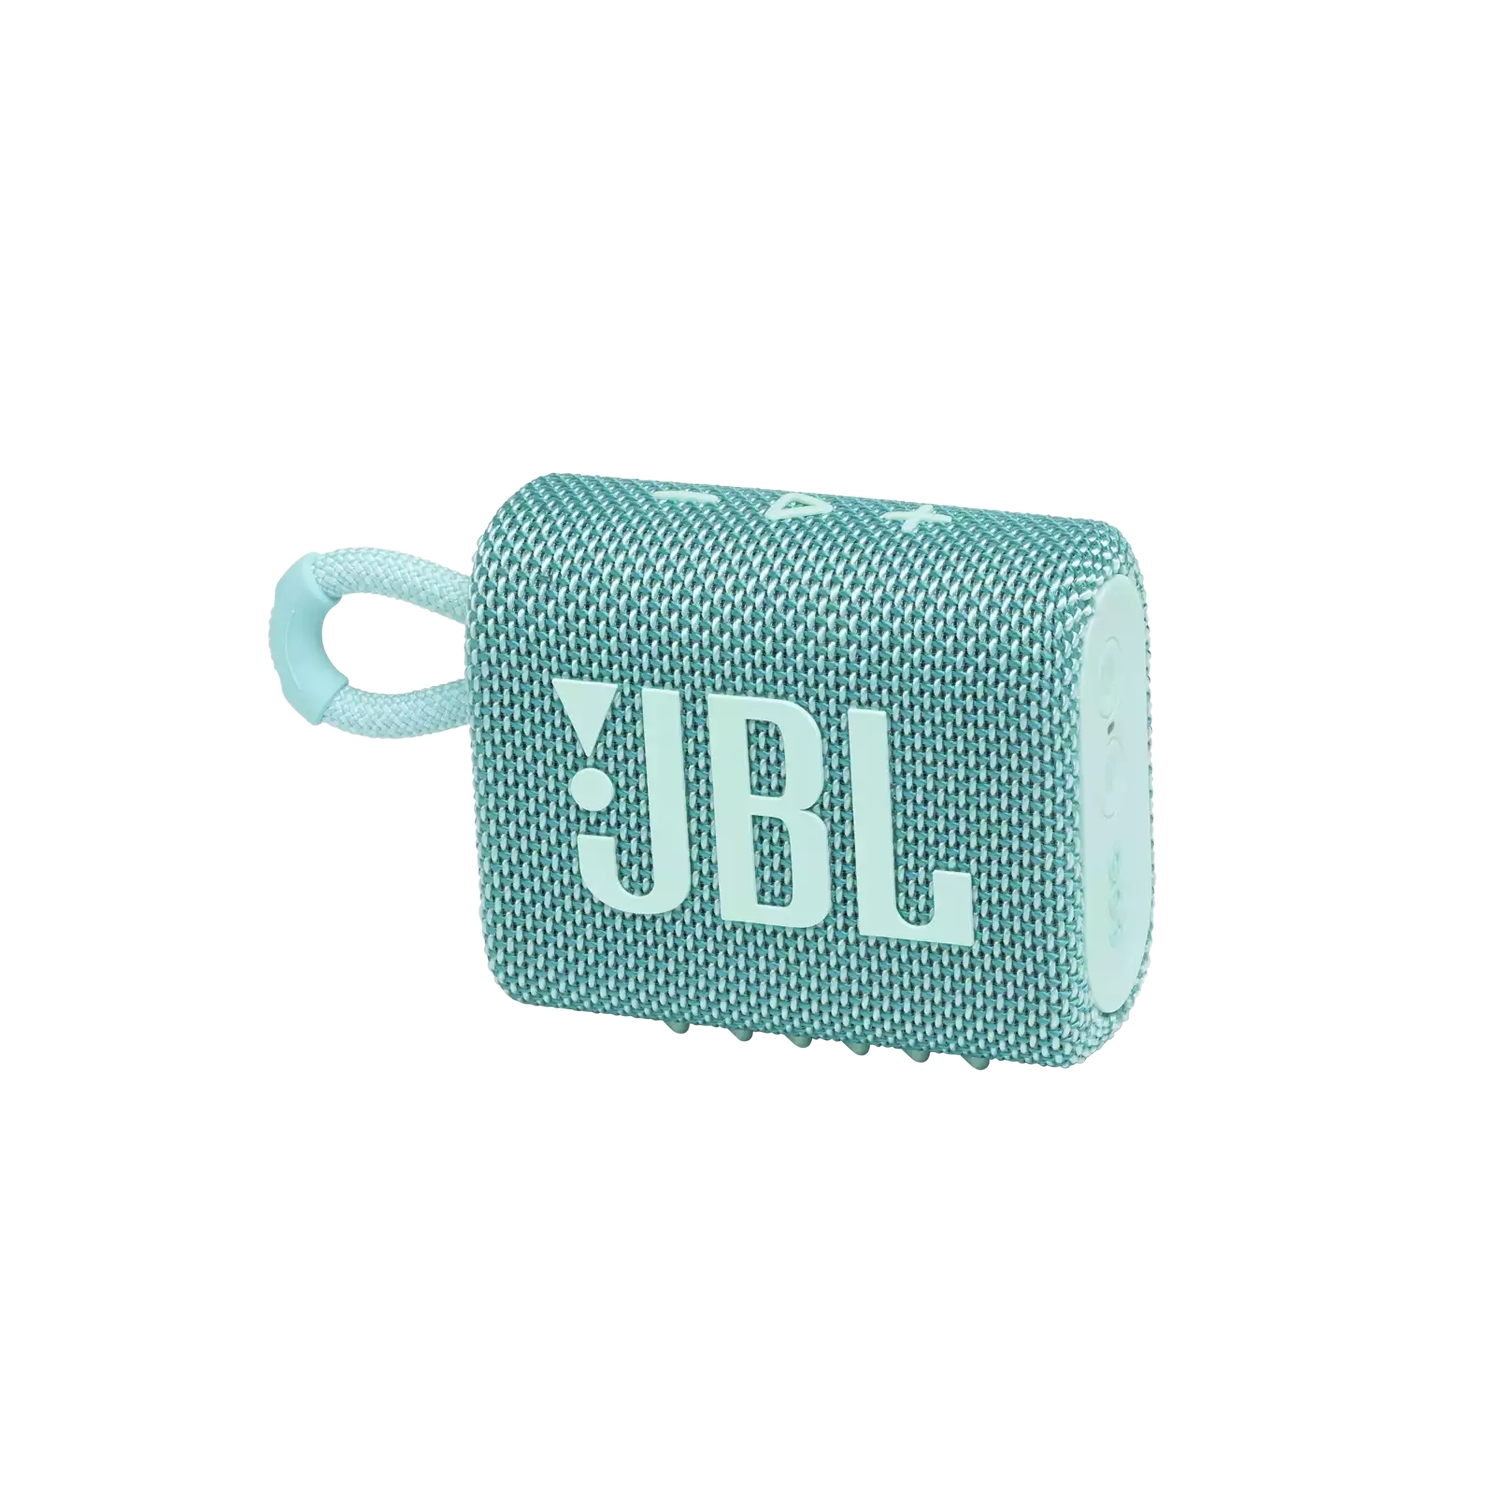 Портативная акустика JBL GO 3 бирюзовая портативная колонка jbl go 3